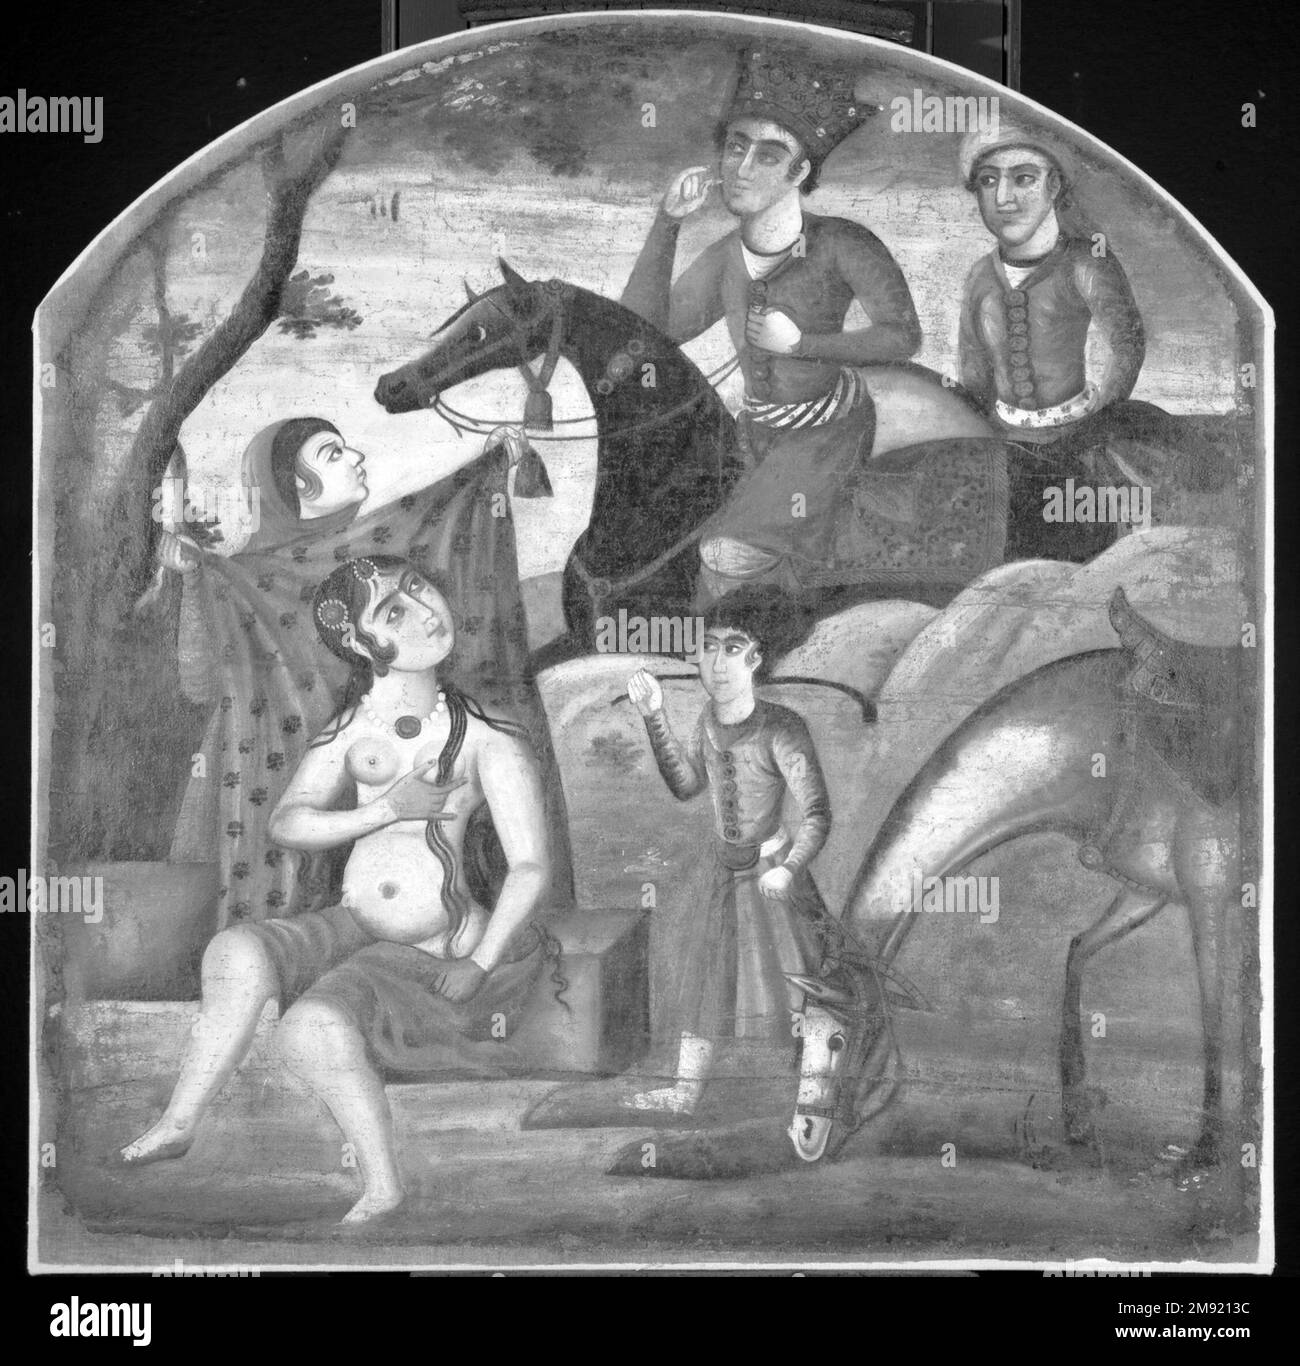 Khusraw scopre Shirin bagno, dal ciclo pittorico di otto soggetti poetici Khusraw scopre Shirin bagno, dal ciclo pittorico di otto soggetti poetici, metà del 18th ° secolo. Olio su tela, 36 x 35 poll. (91,4 x 88,9 cm). Questa immagine cattura il momento culminante della passione per l'amore tra il leggendario re iraniano Khusraw II (dinastia Sasaniana, 590–628) e Shirin, una principessa armena. Dopo giorni di anelito, Khusraw incontra per la prima volta Shirin mentre si bagna in uno stagno. Affascinati dalla bellezza degli altri, gli amanti restano senza parole. Anche se radicato in orale Foto Stock